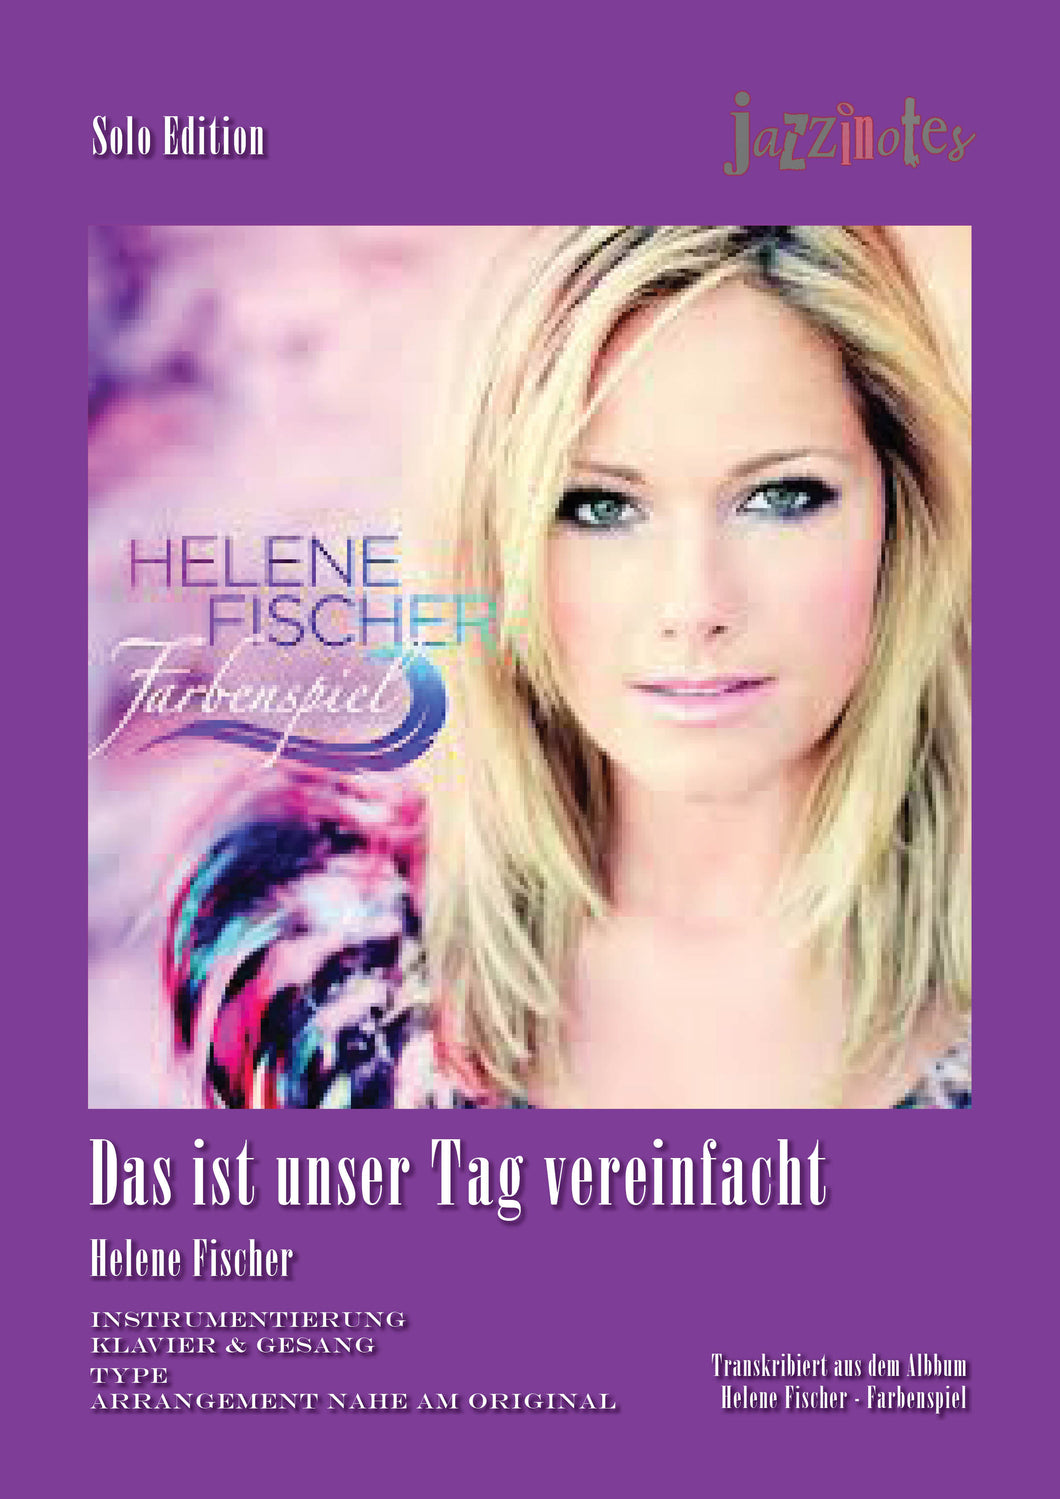 Fischer, Helene: Das ist unser Tag (Simplified Version) - Sheet Music Download